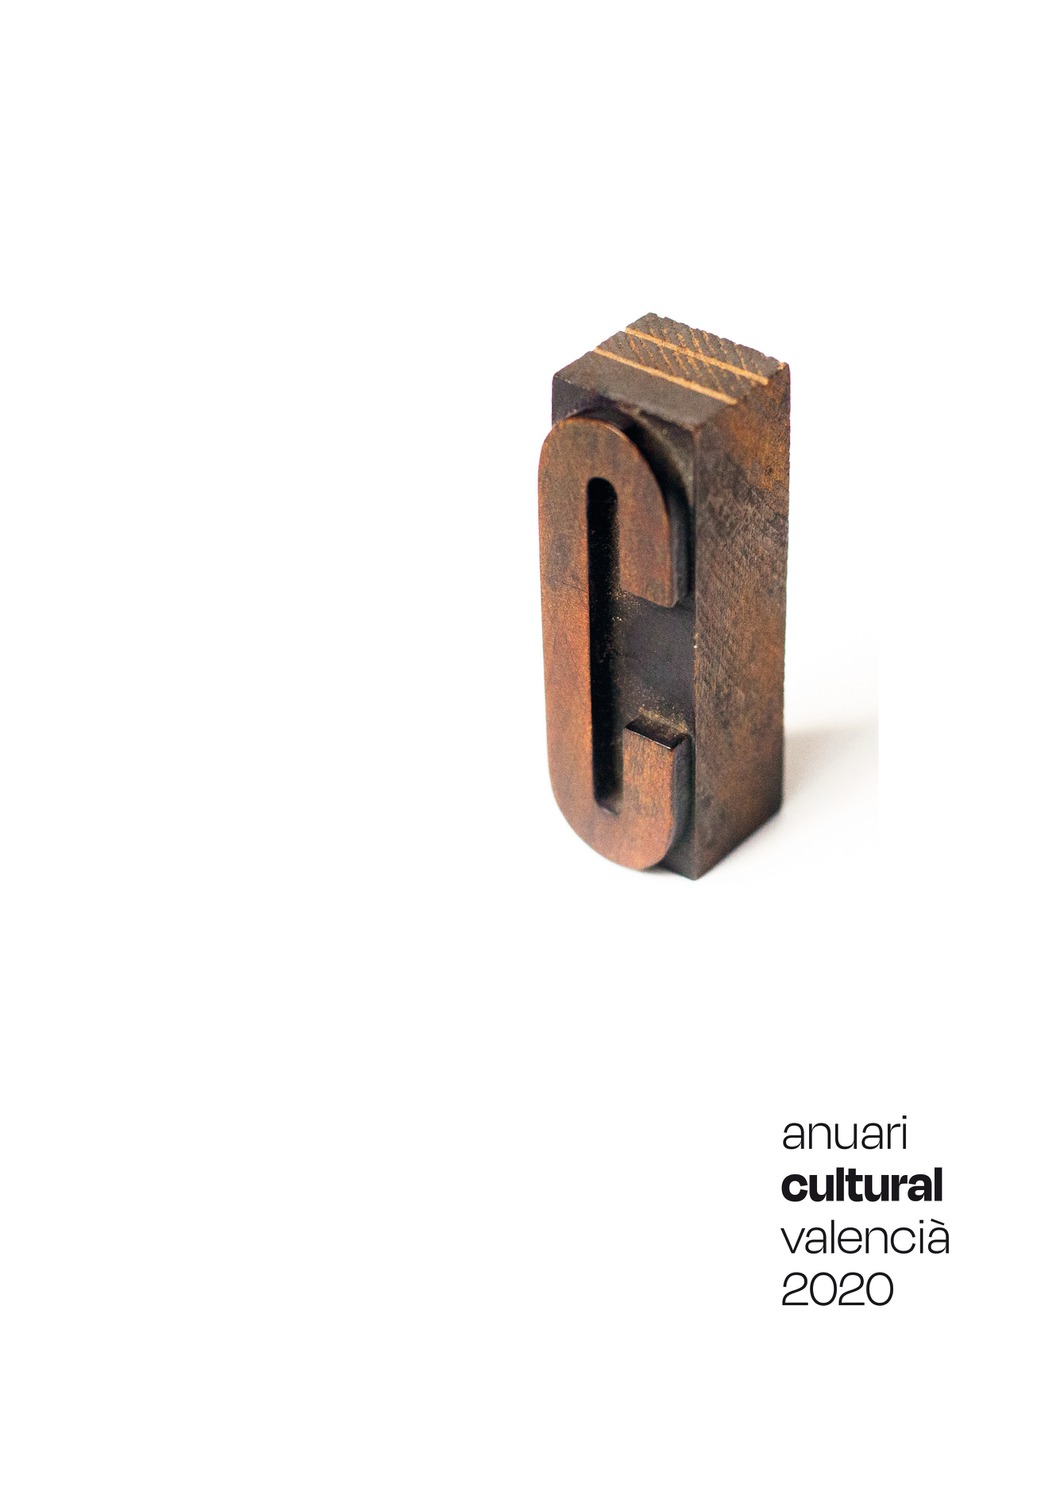 El Anuari Cultural Valencià 2020 cifra la precaria situación del sector cultural